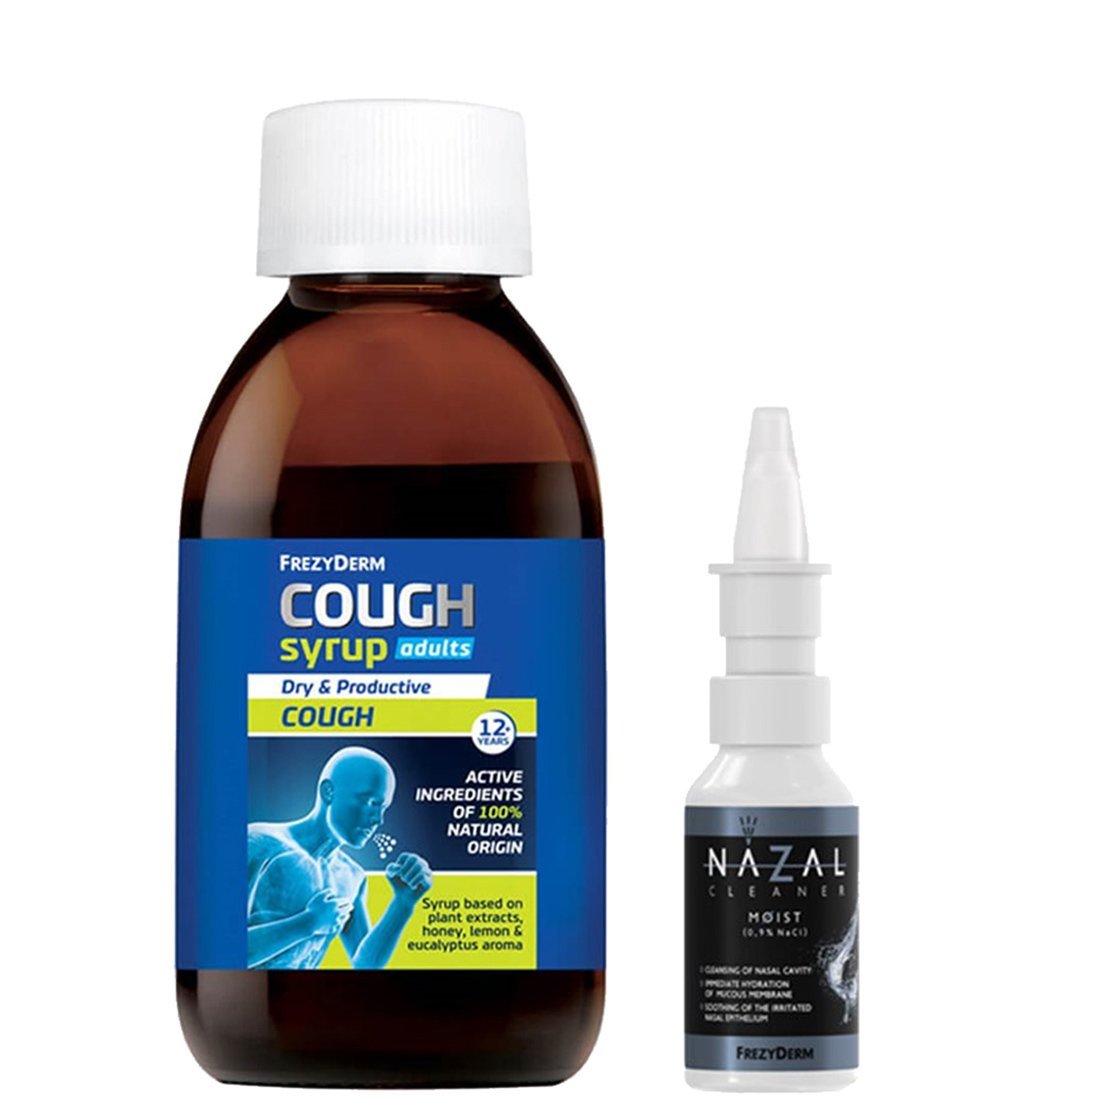 Frezyderm Frezyderm Promo Cough Syrup Adults 182g & Nazal Cleaner Moist Spray 30ml